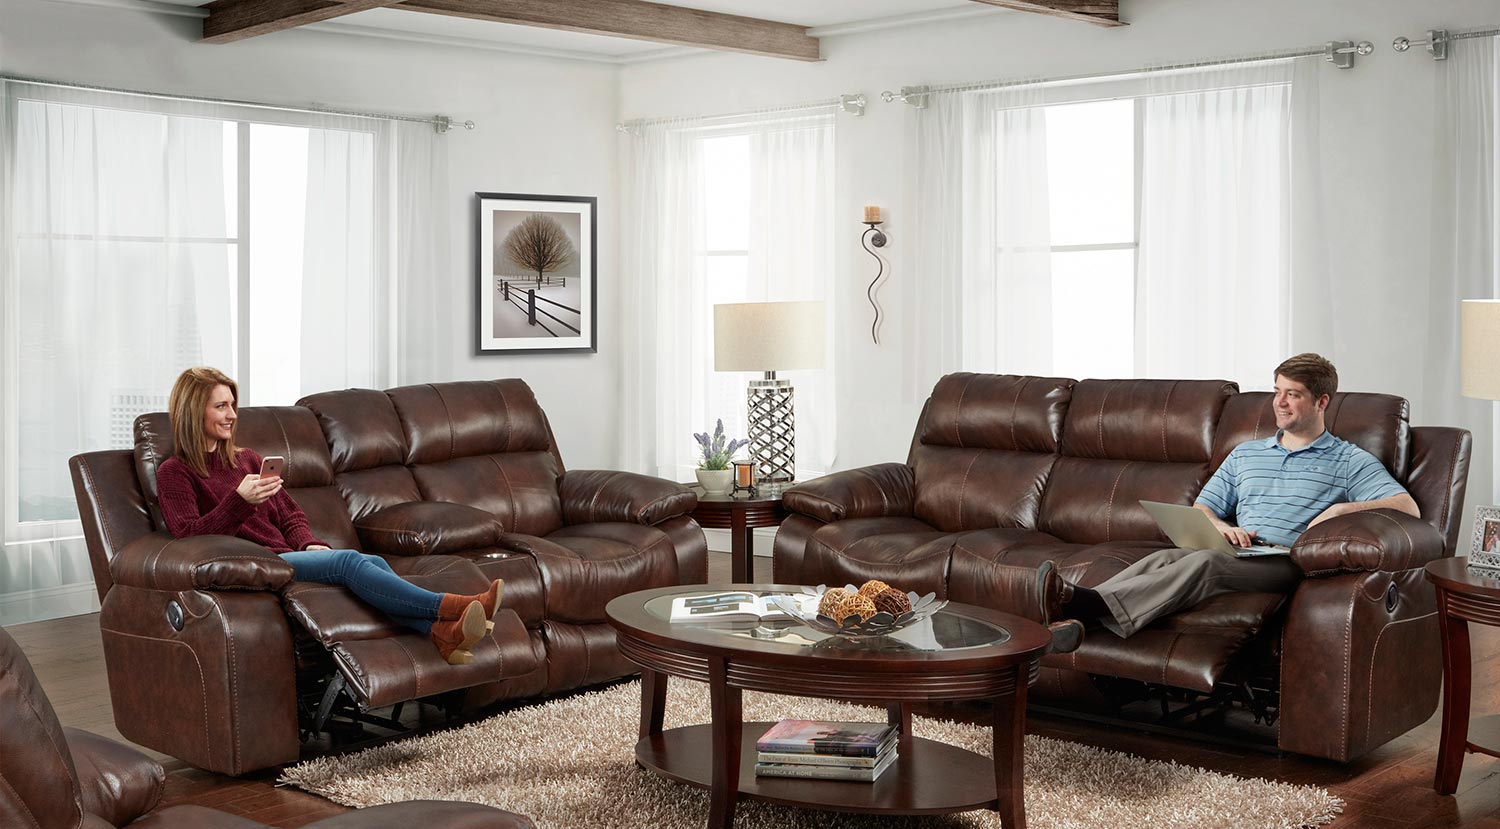 CatNapper Positano Reclining Sofa Set - Cocoa